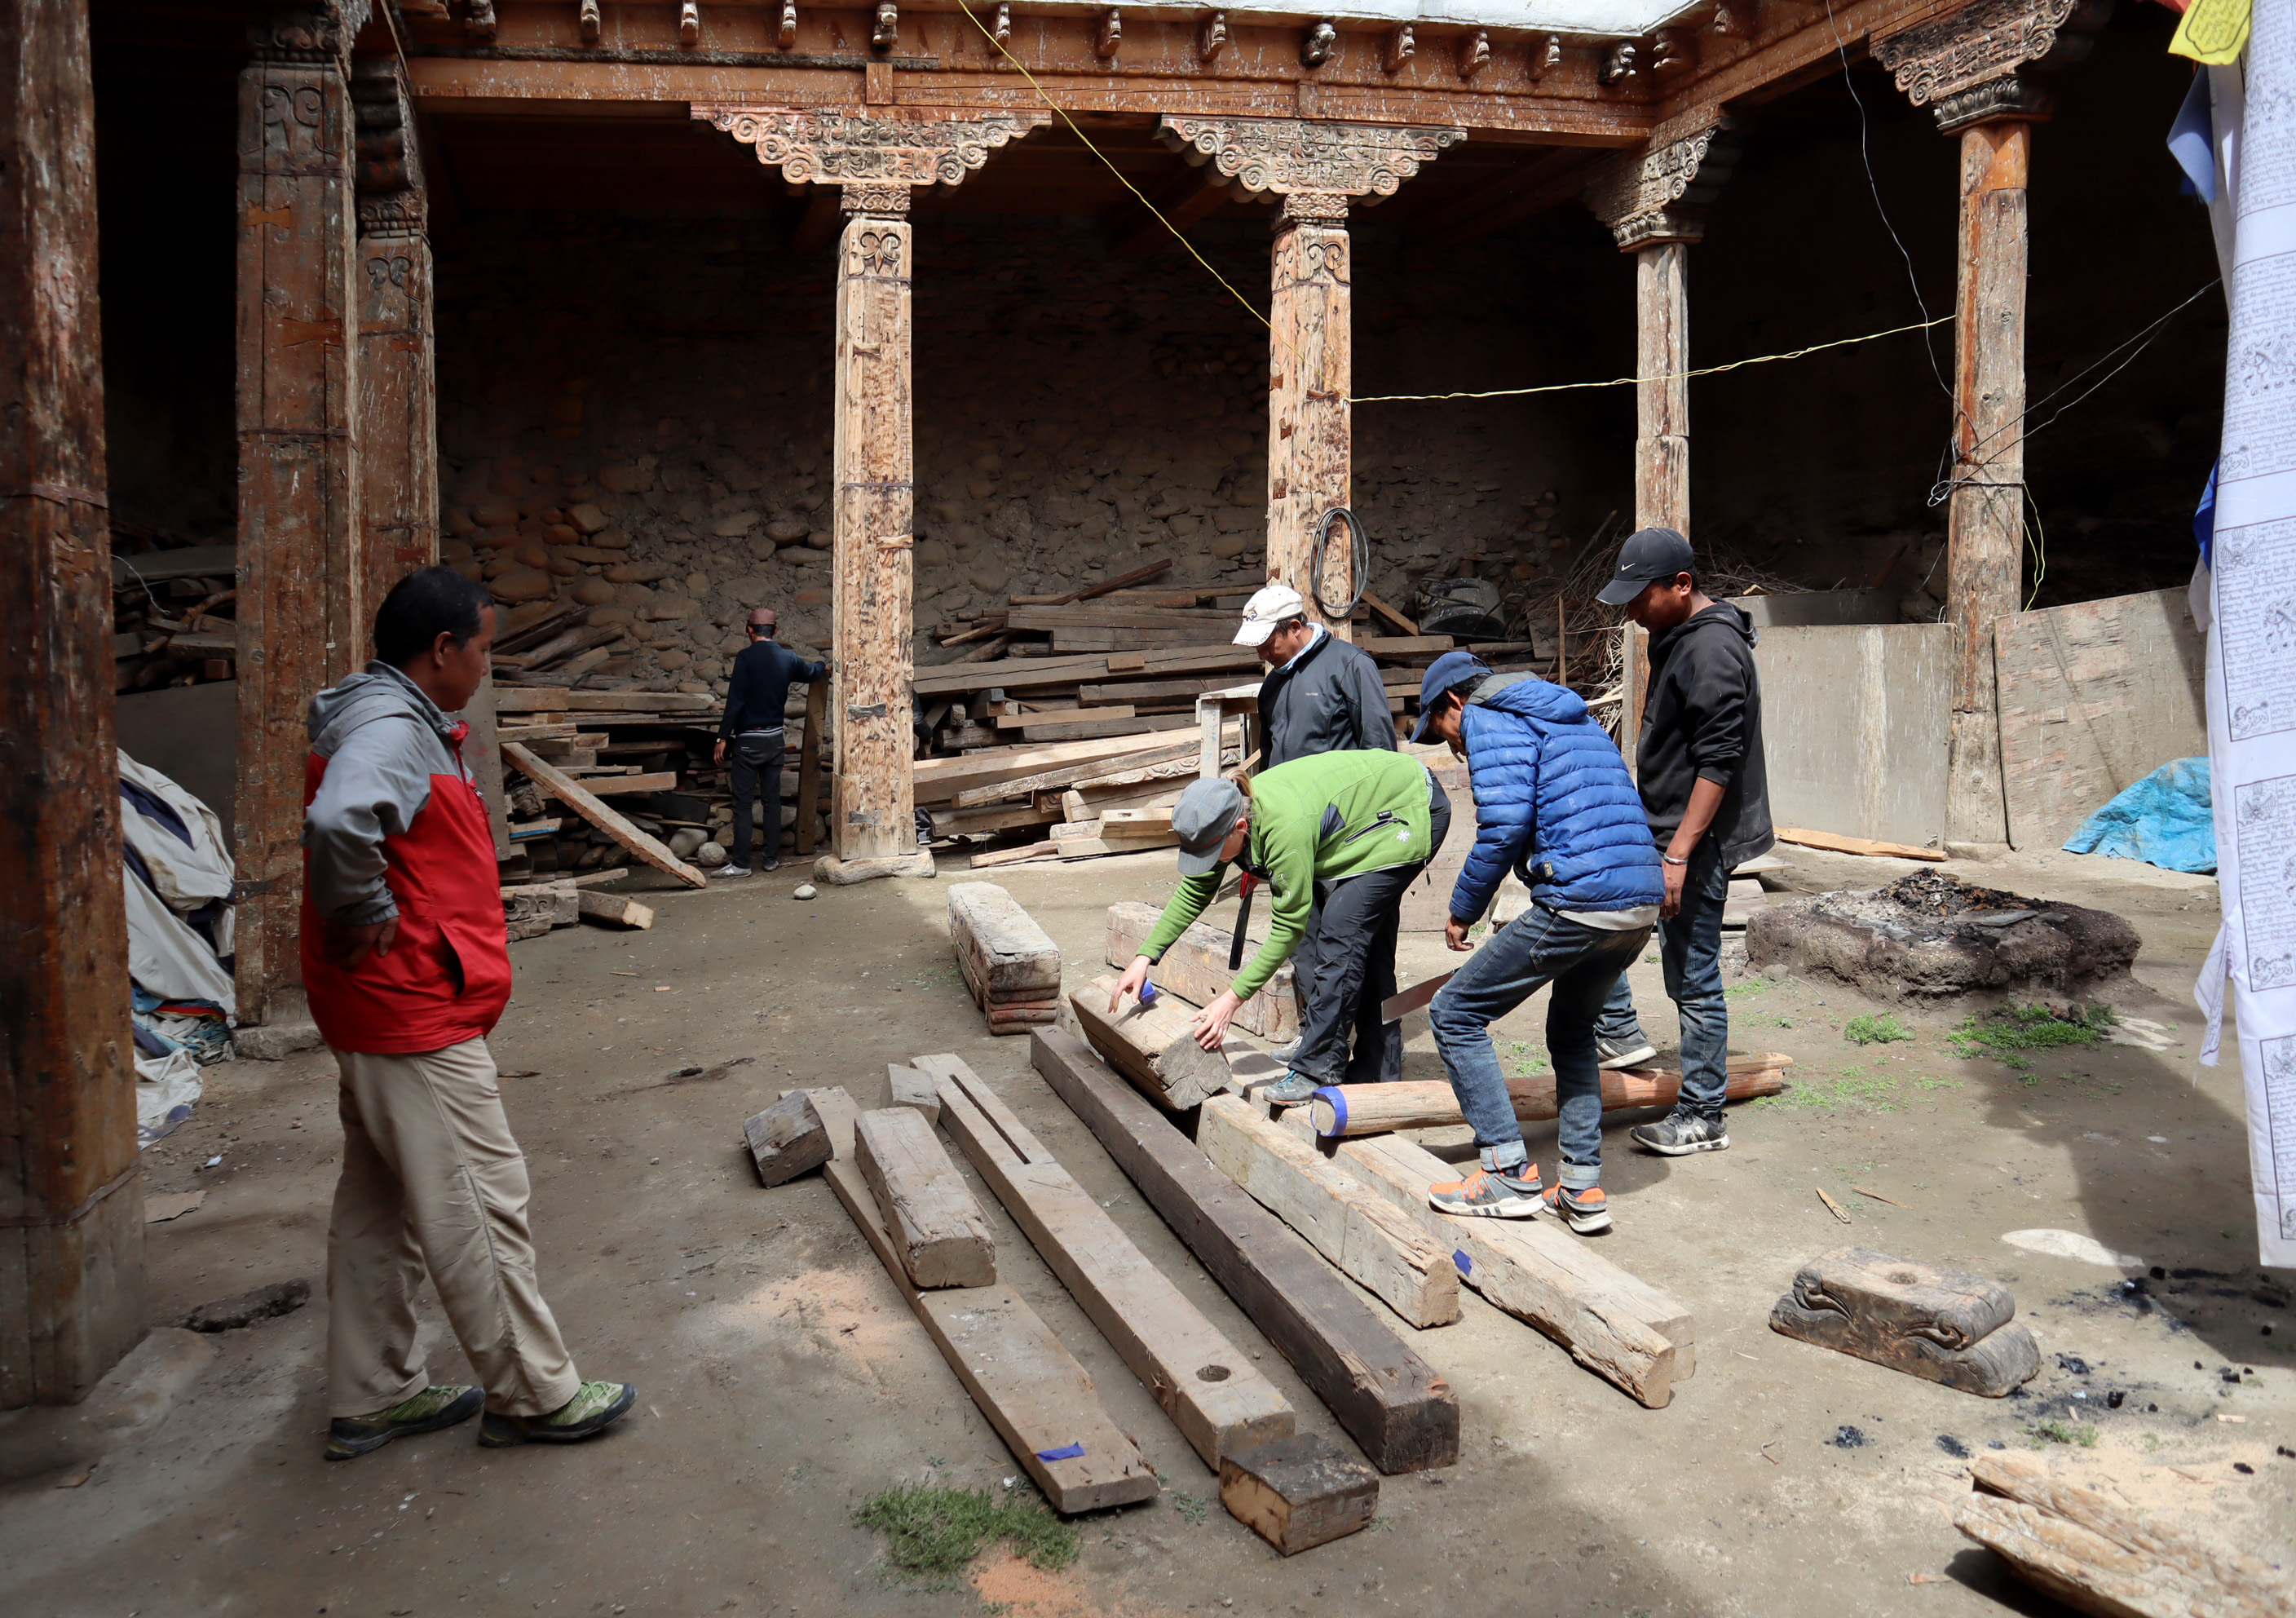 Prace na dziedzińcu klasztoru Jampa Lakhang w Lo Manthang. Pobieranie prób z elementów usuniętych z gompy Thupchen podczas prac konserwatorskich